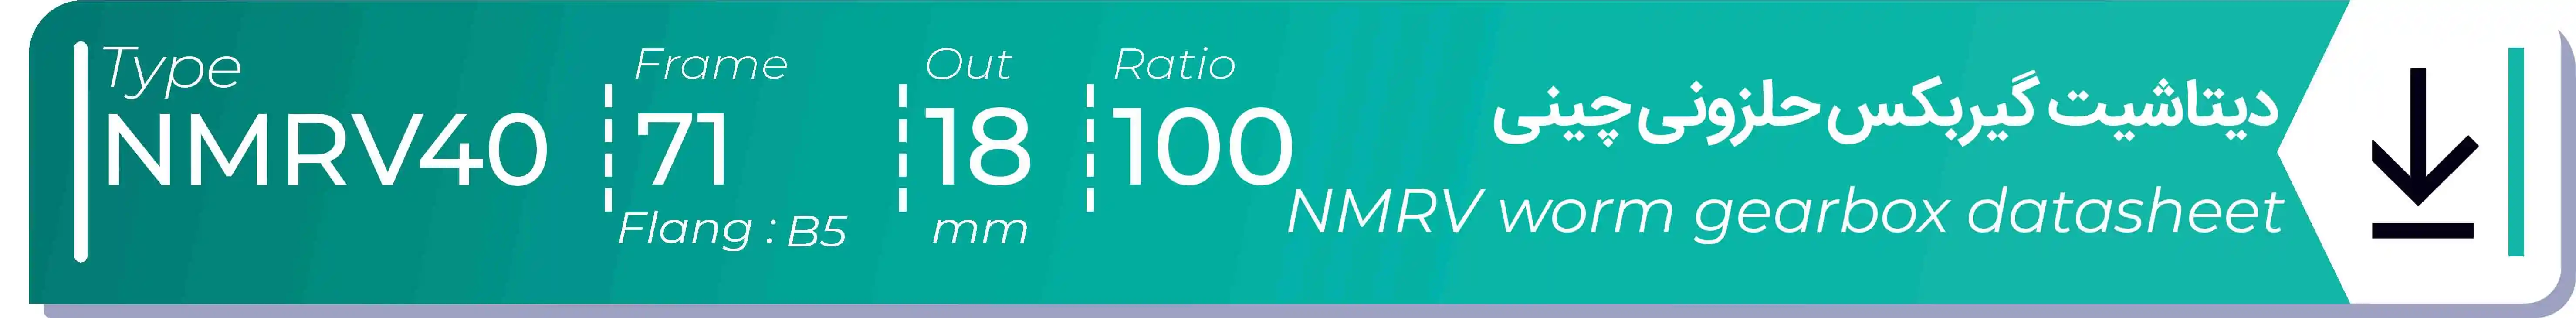  دیتاشیت و مشخصات فنی گیربکس حلزونی چینی   NMRV40  -  با خروجی 18- میلی متر و نسبت100 و فریم 71